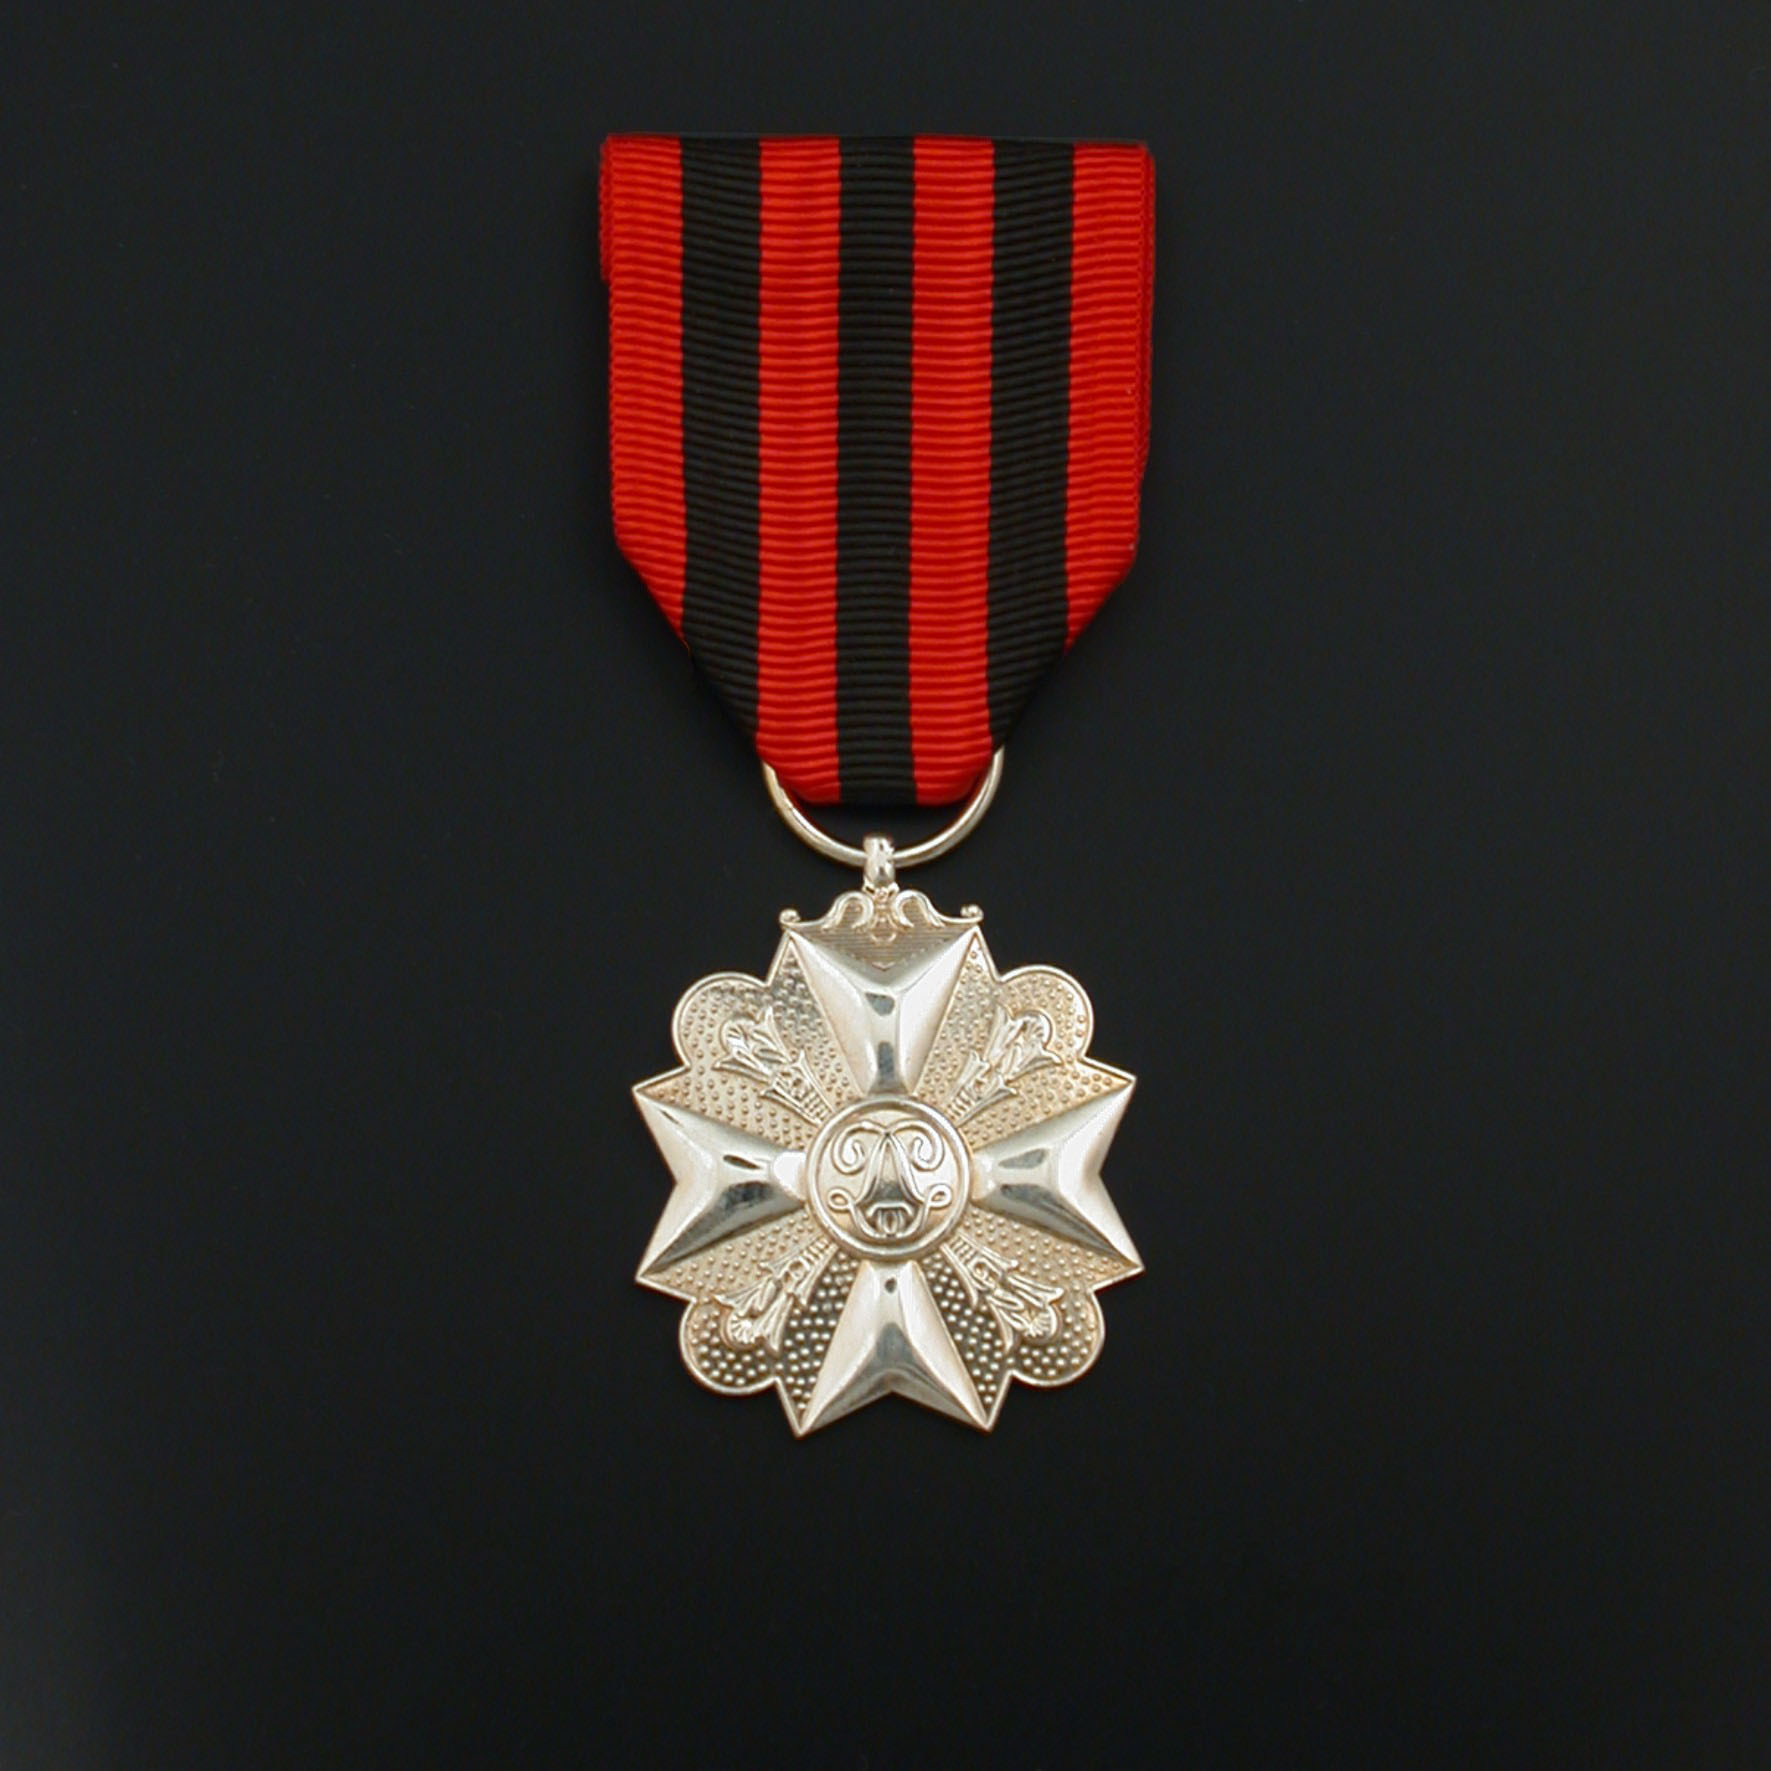 officieel-burgerlijk-ereteken-medaille-2e-klasse-01-01-06-burgerlijk-burgerlijke-medaille-2e-klasse-officieel-model.jpg